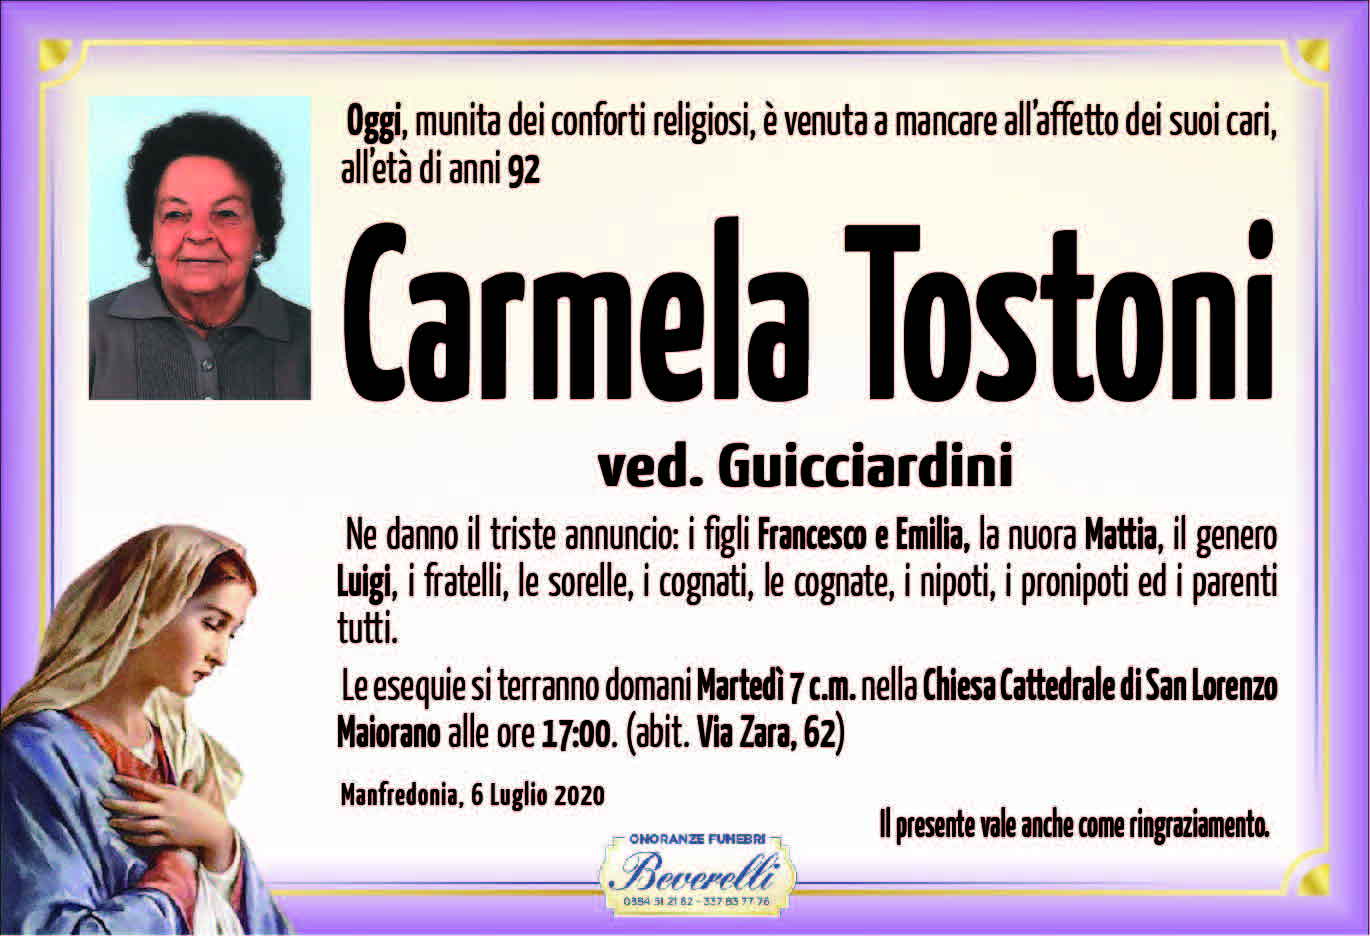 Carmela Tostoni